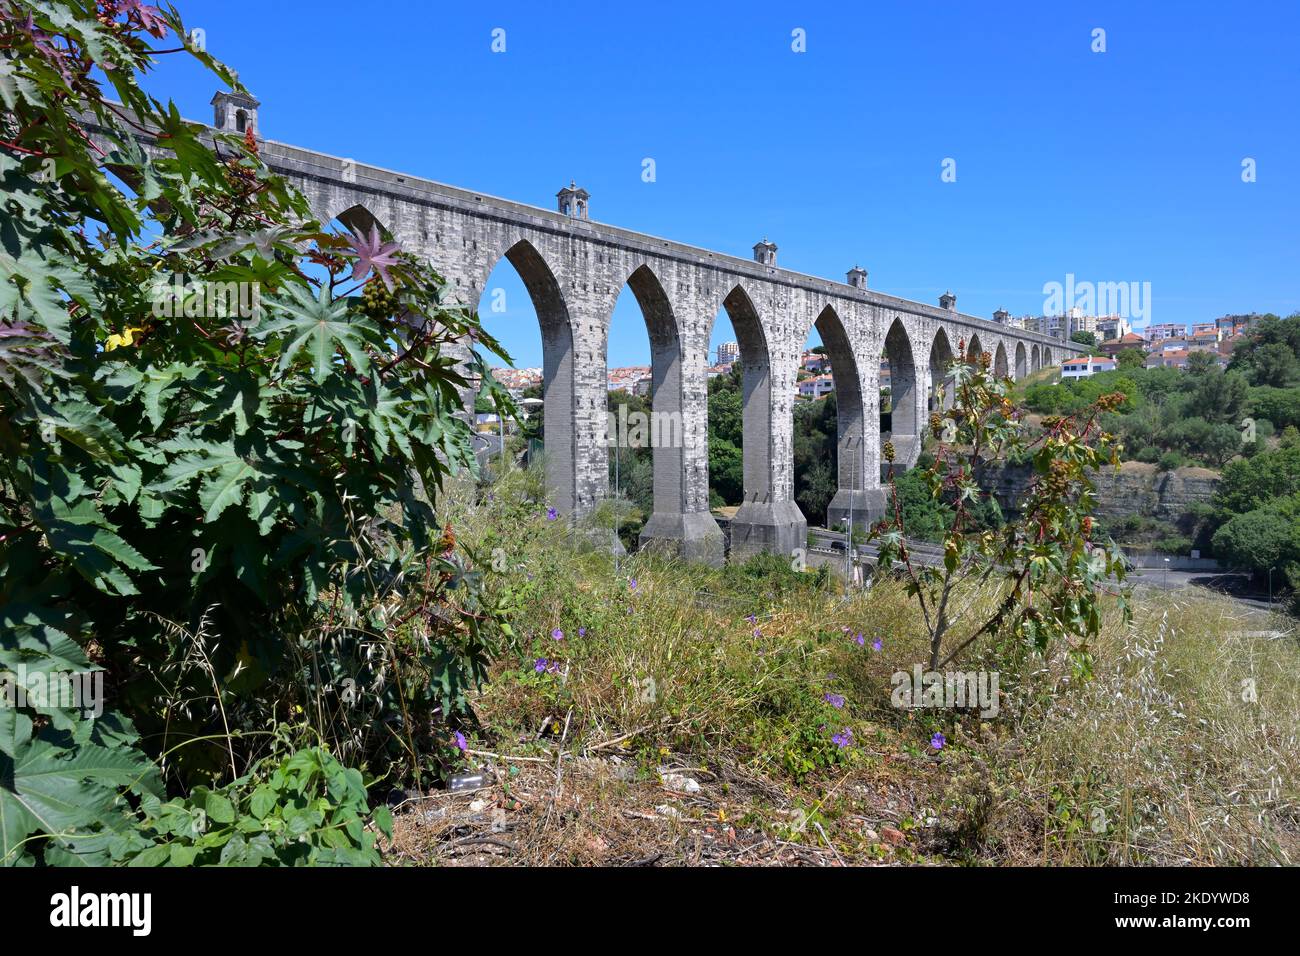 Aqueduc historique de 18th siècles des eaux libres ou aqueduc d'Águas livres, Lisbonne, Portugal Banque D'Images